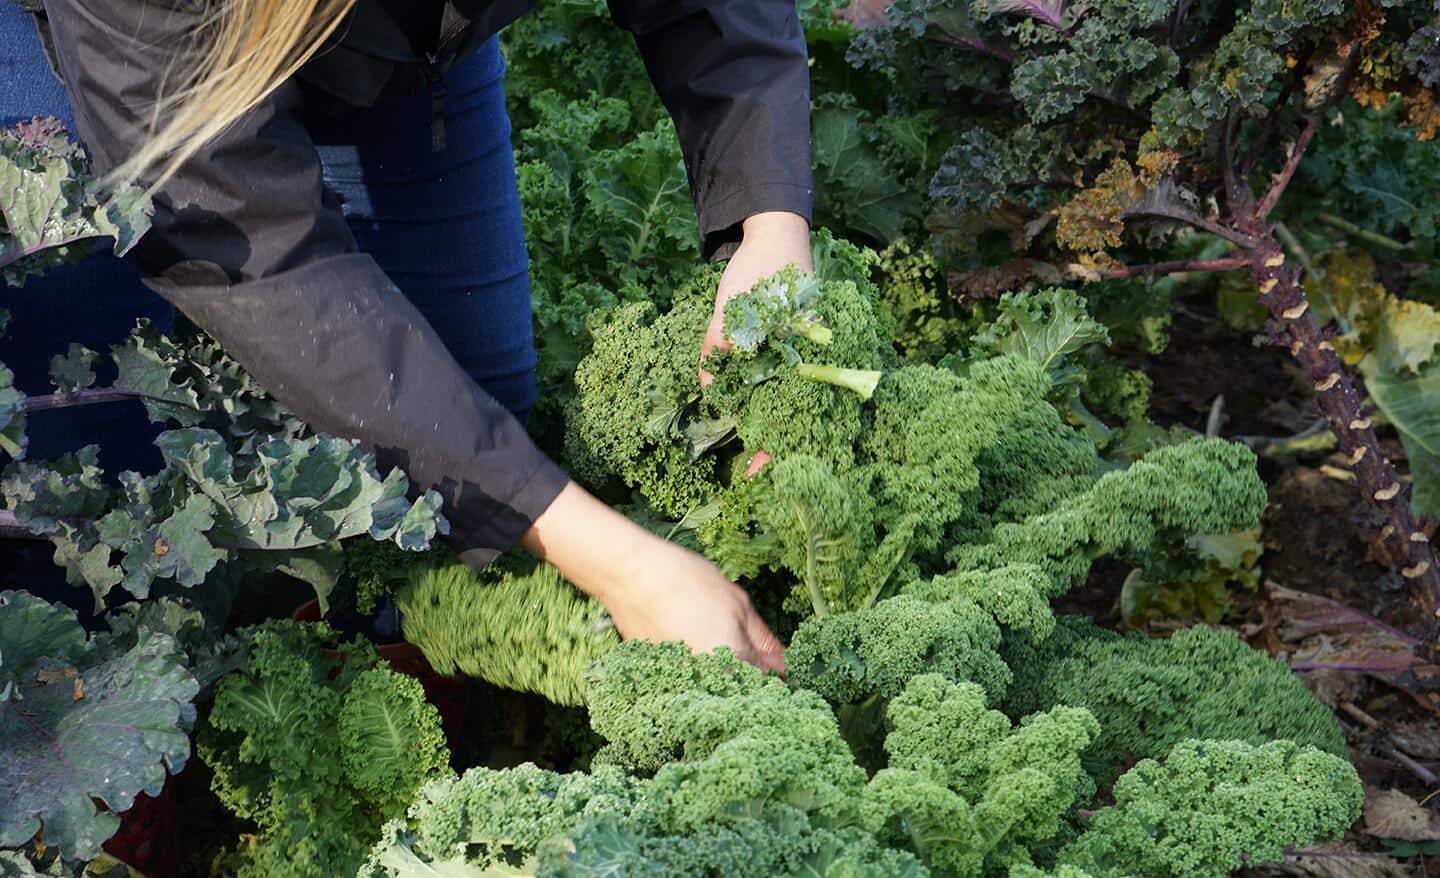 Gardener harvests kale in a vegetable garden